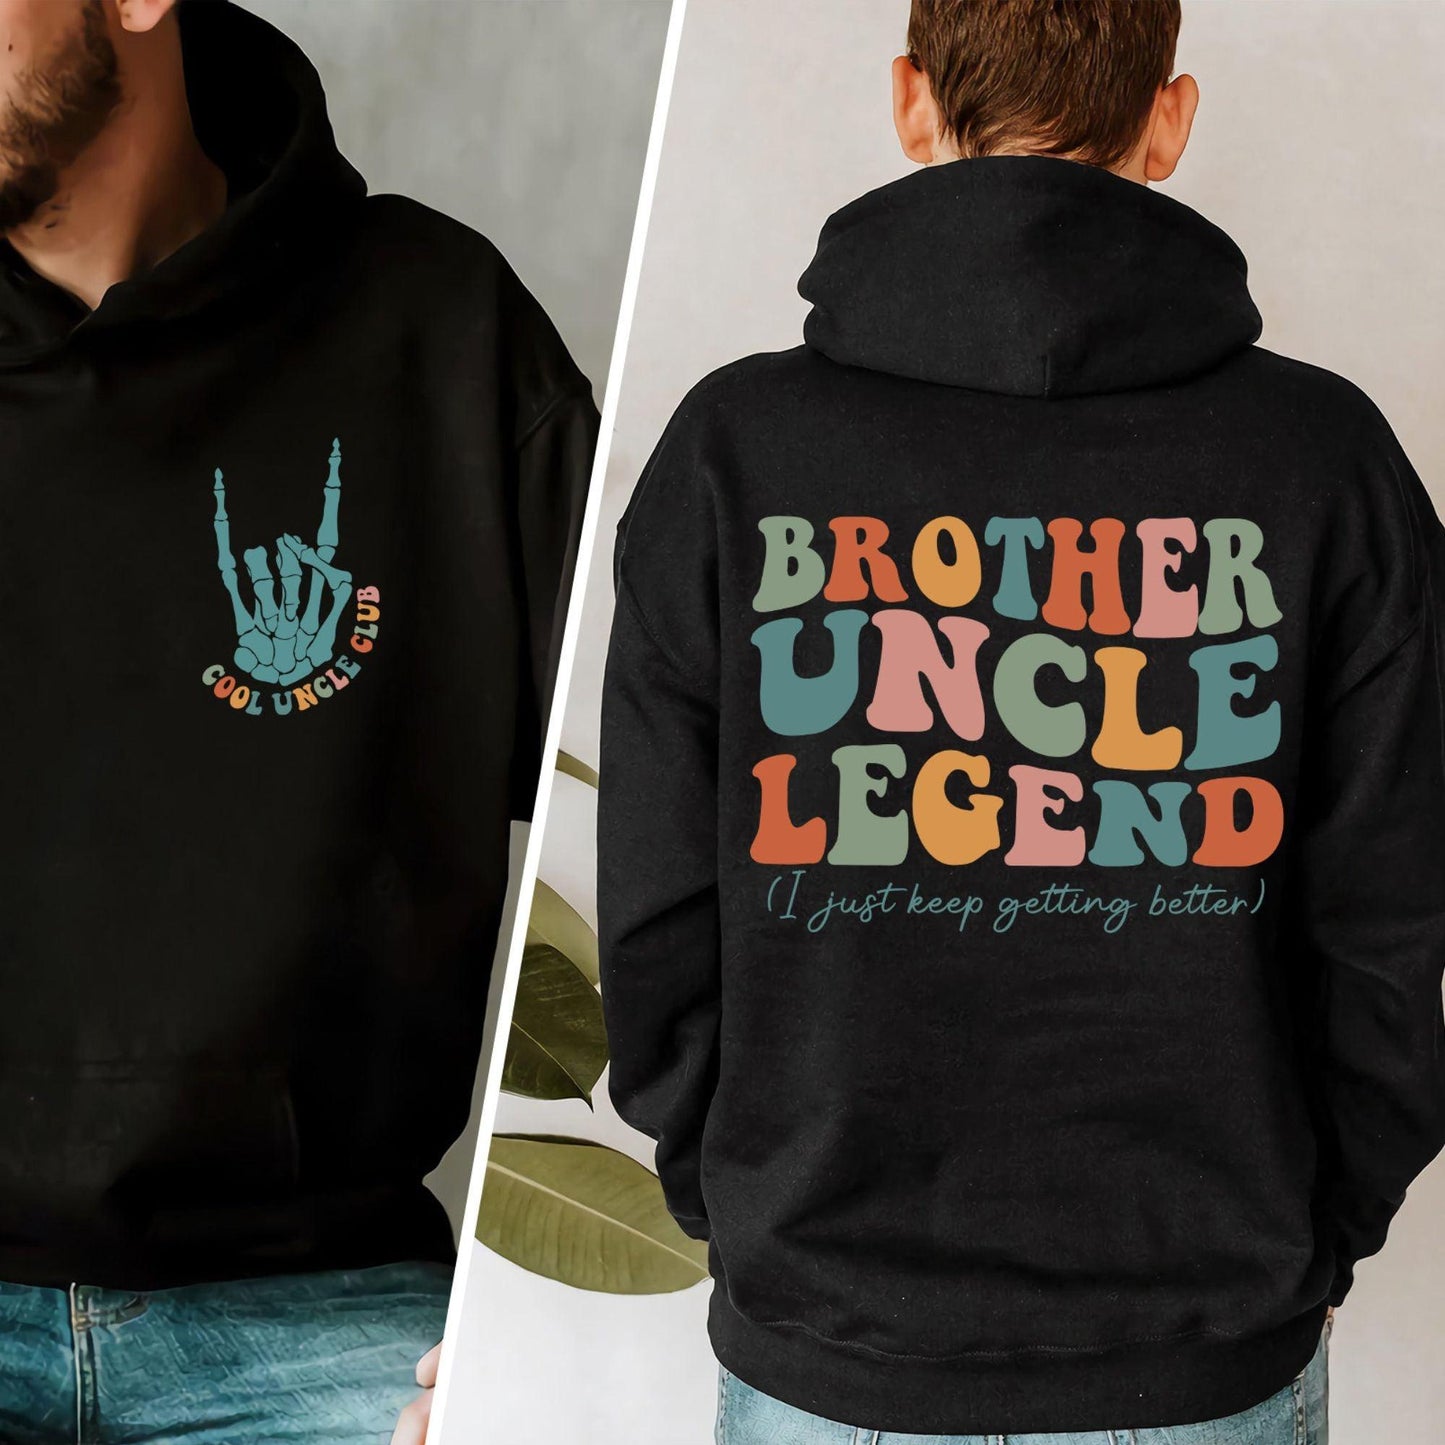 Cooles Onkel Club Sweatshirt, Onkel Sweatshirt, Onkel Geschenk - GiftHaus